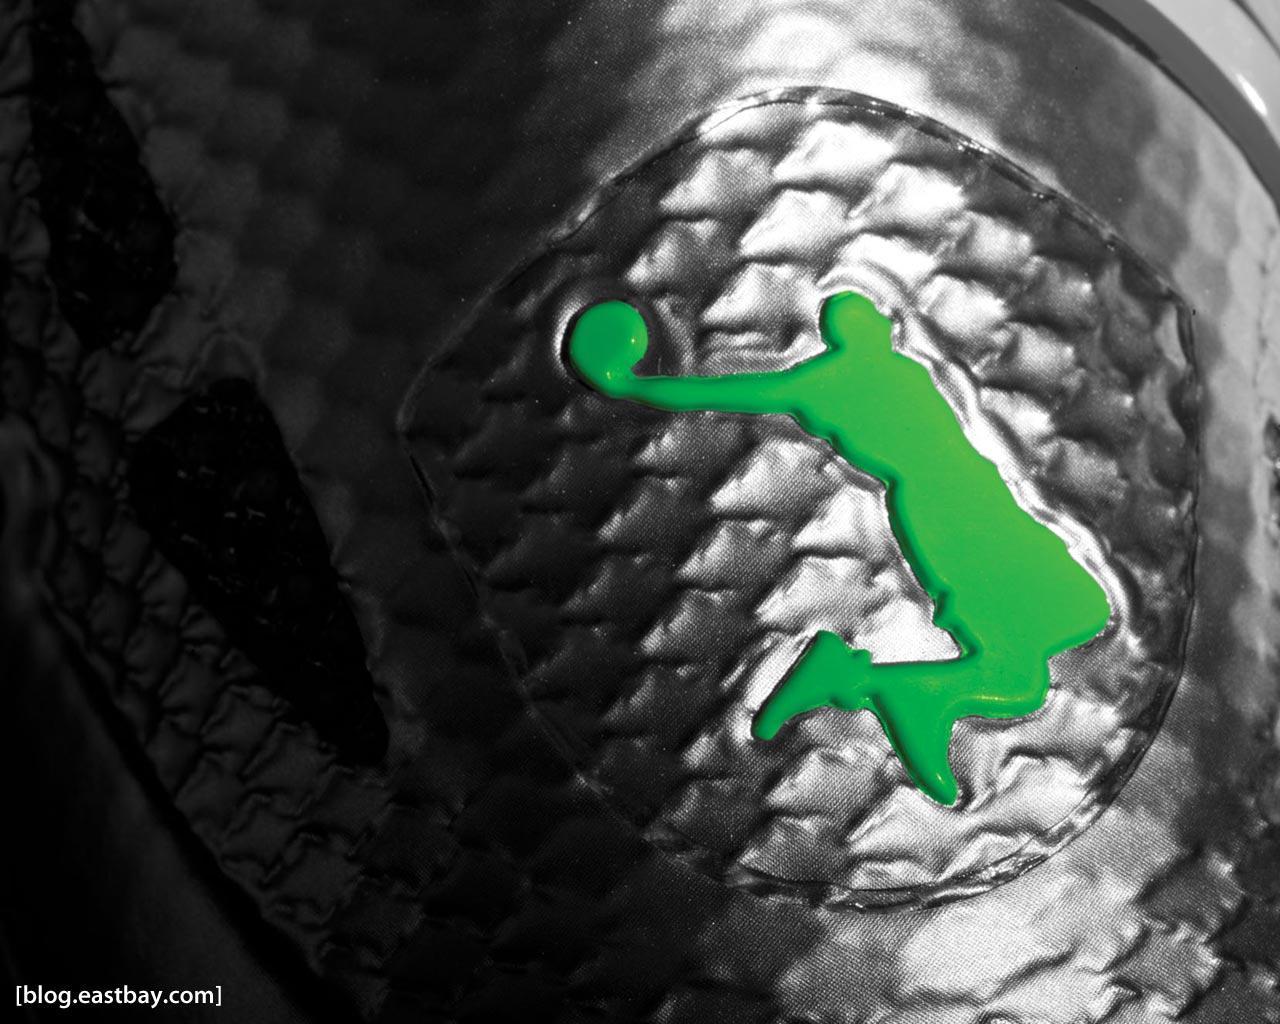 Wallpaper: Nike LeBron 8 PS “Dunkman”